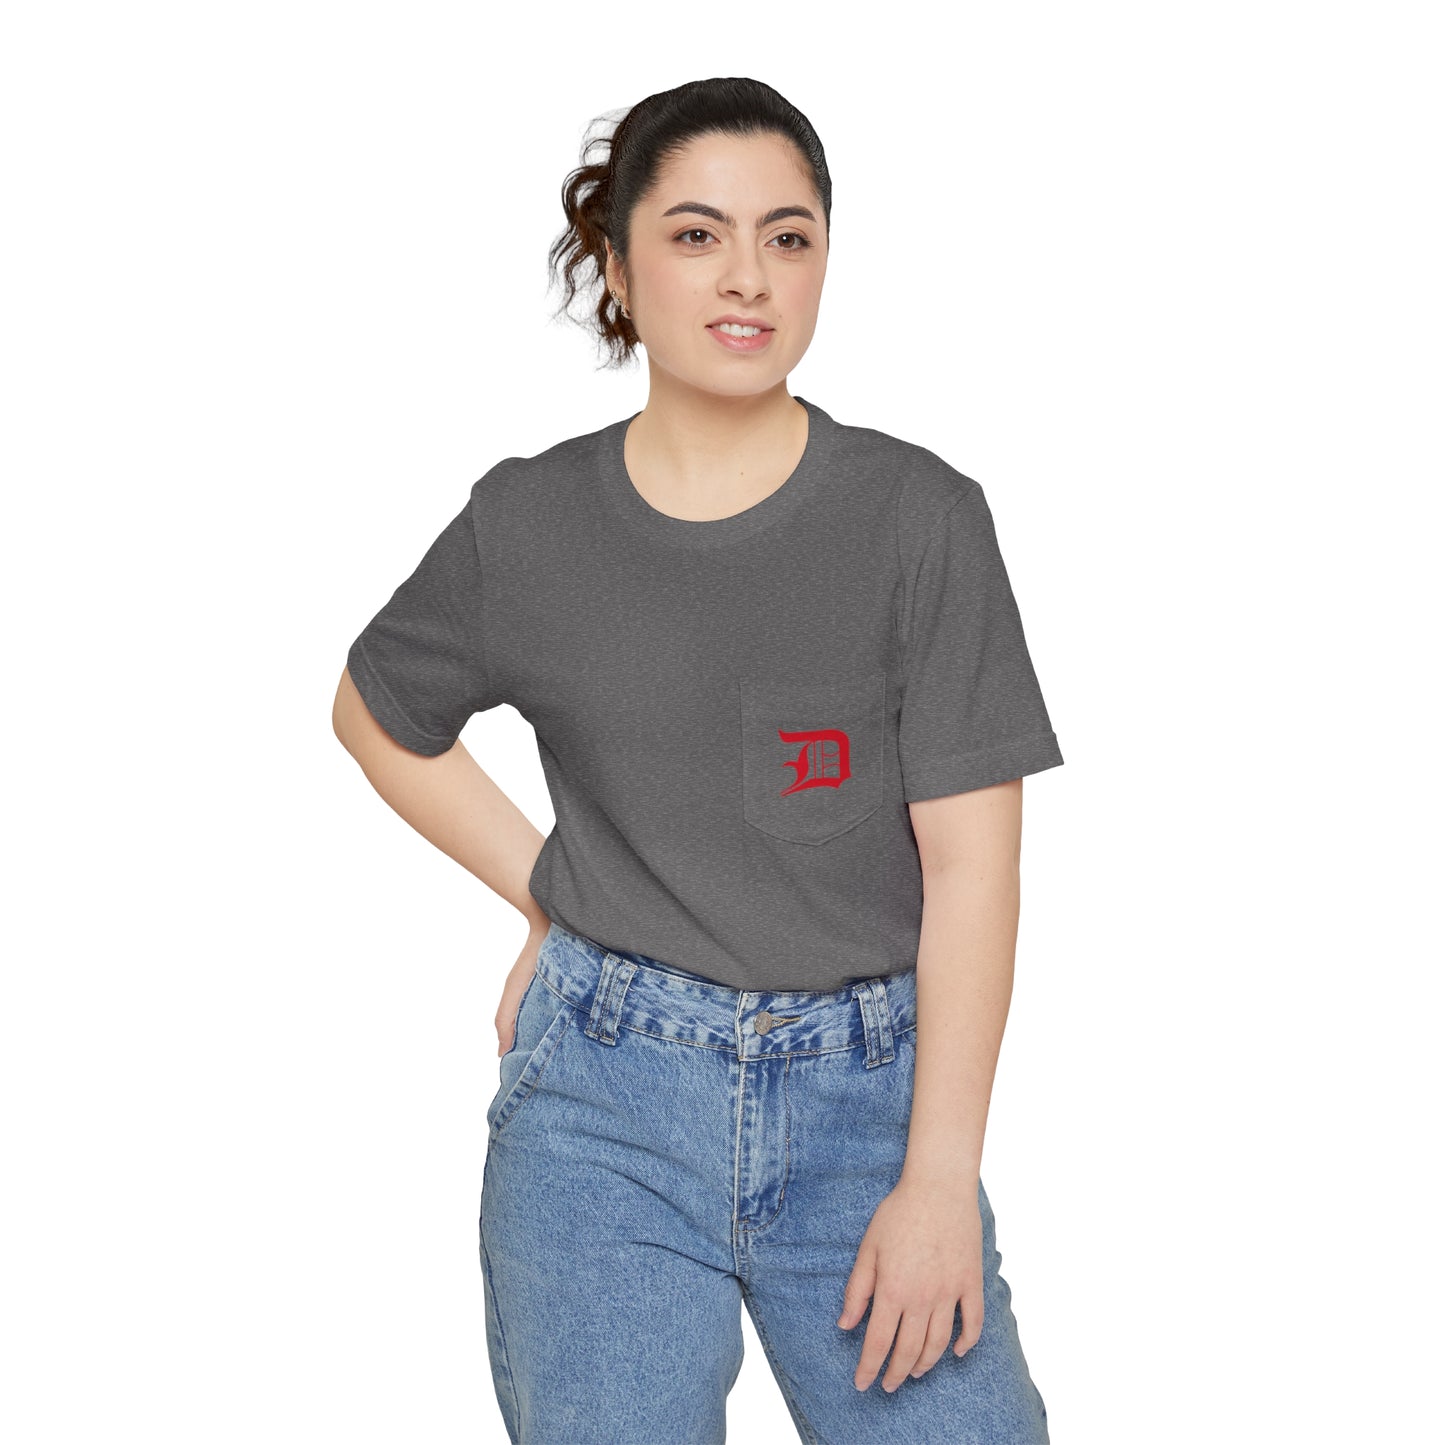 Detroit 'Old English D' Pocket T-Shirt (Aliform Red) | Unisex Standard